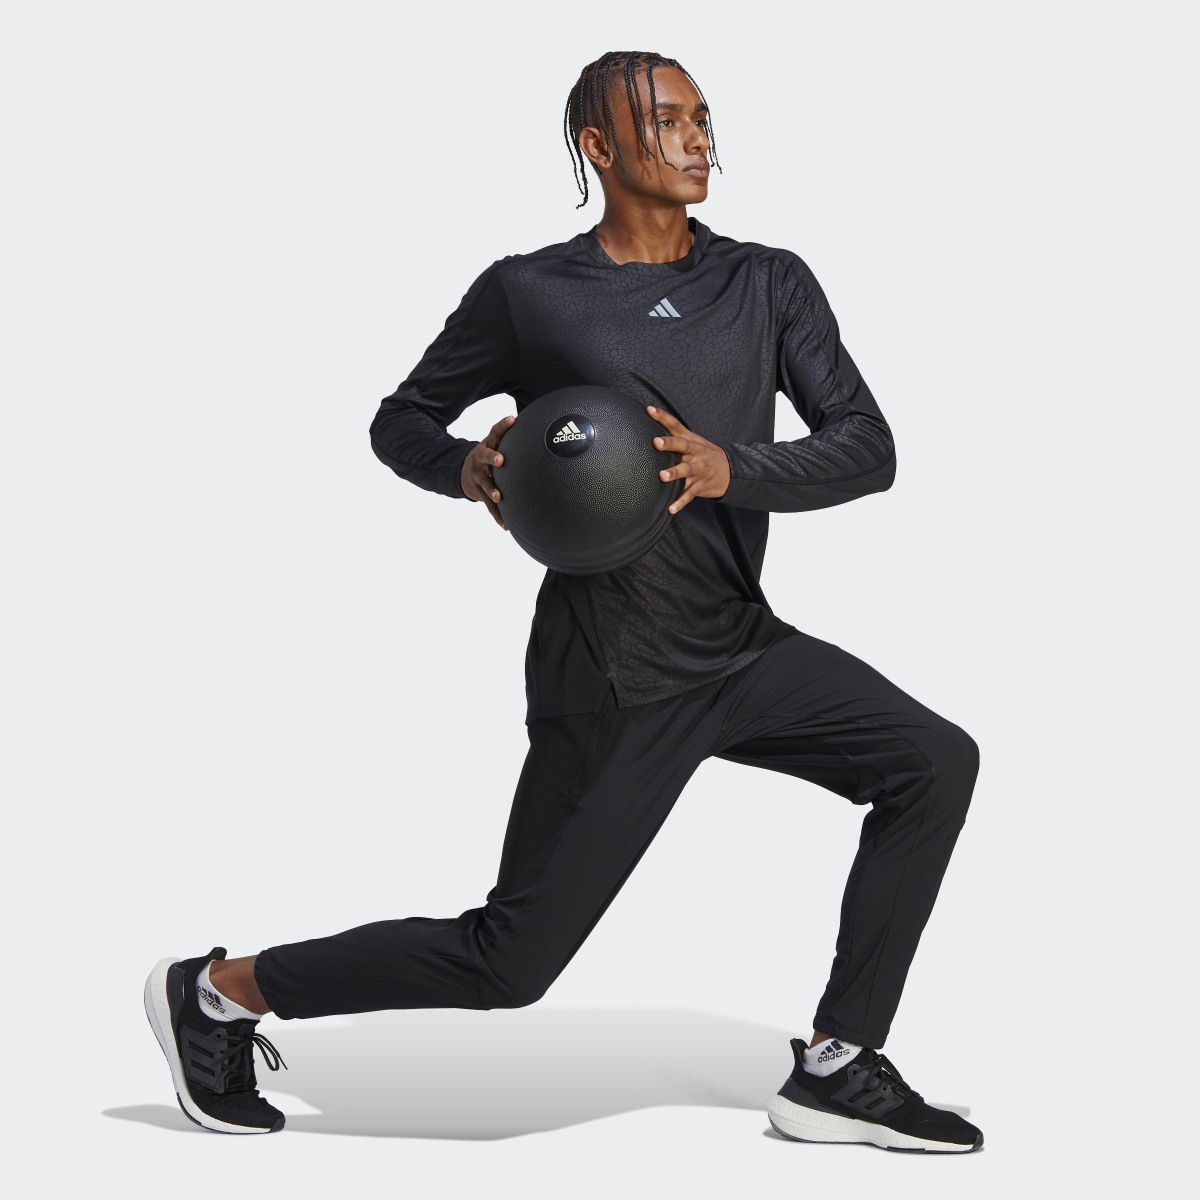 Adidas Workout PU Print Long-Sleeve Top. 4